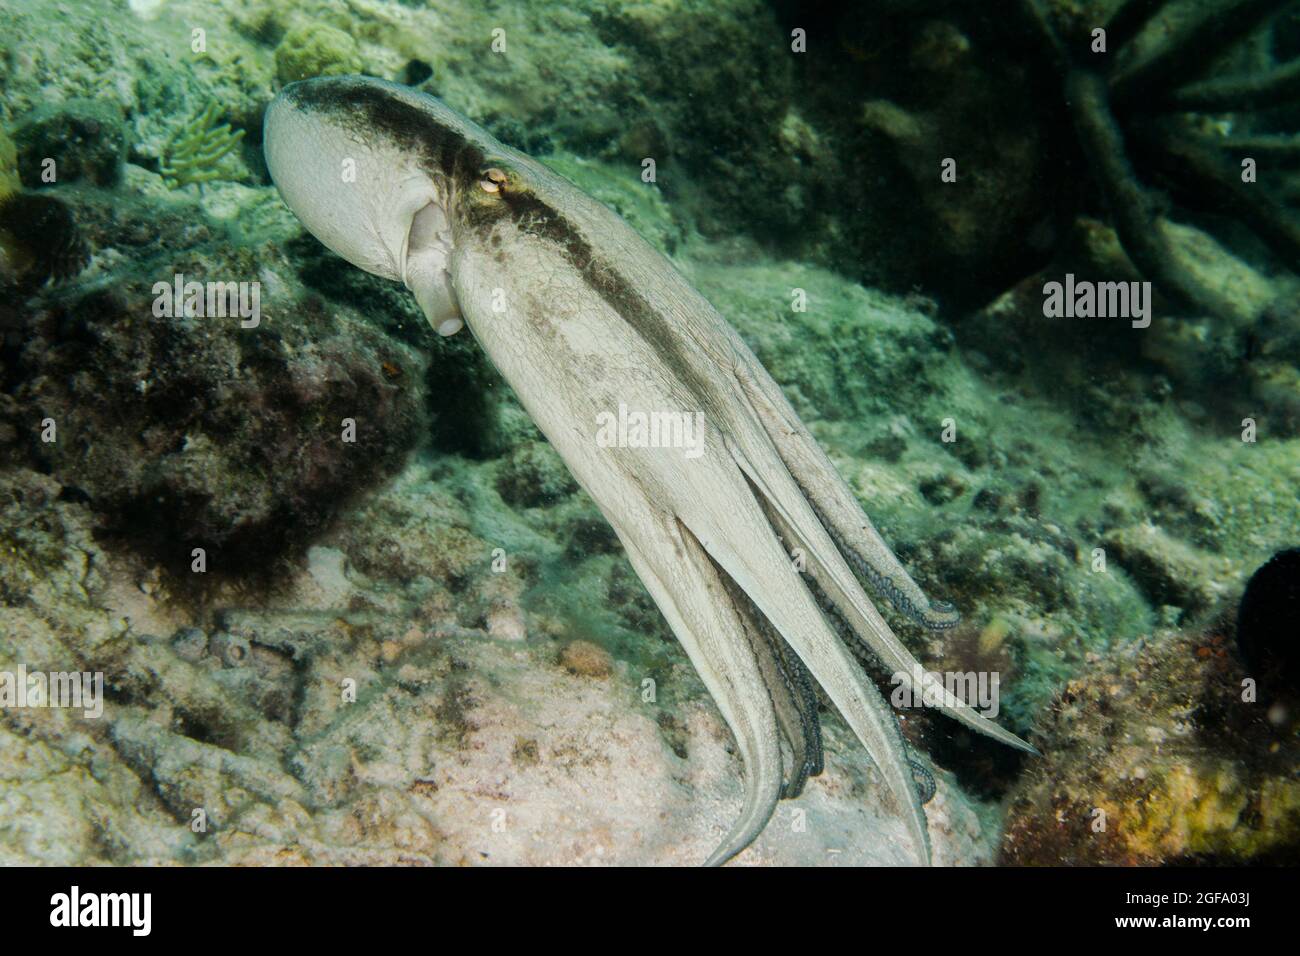 Octopus nuoto Foto Stock